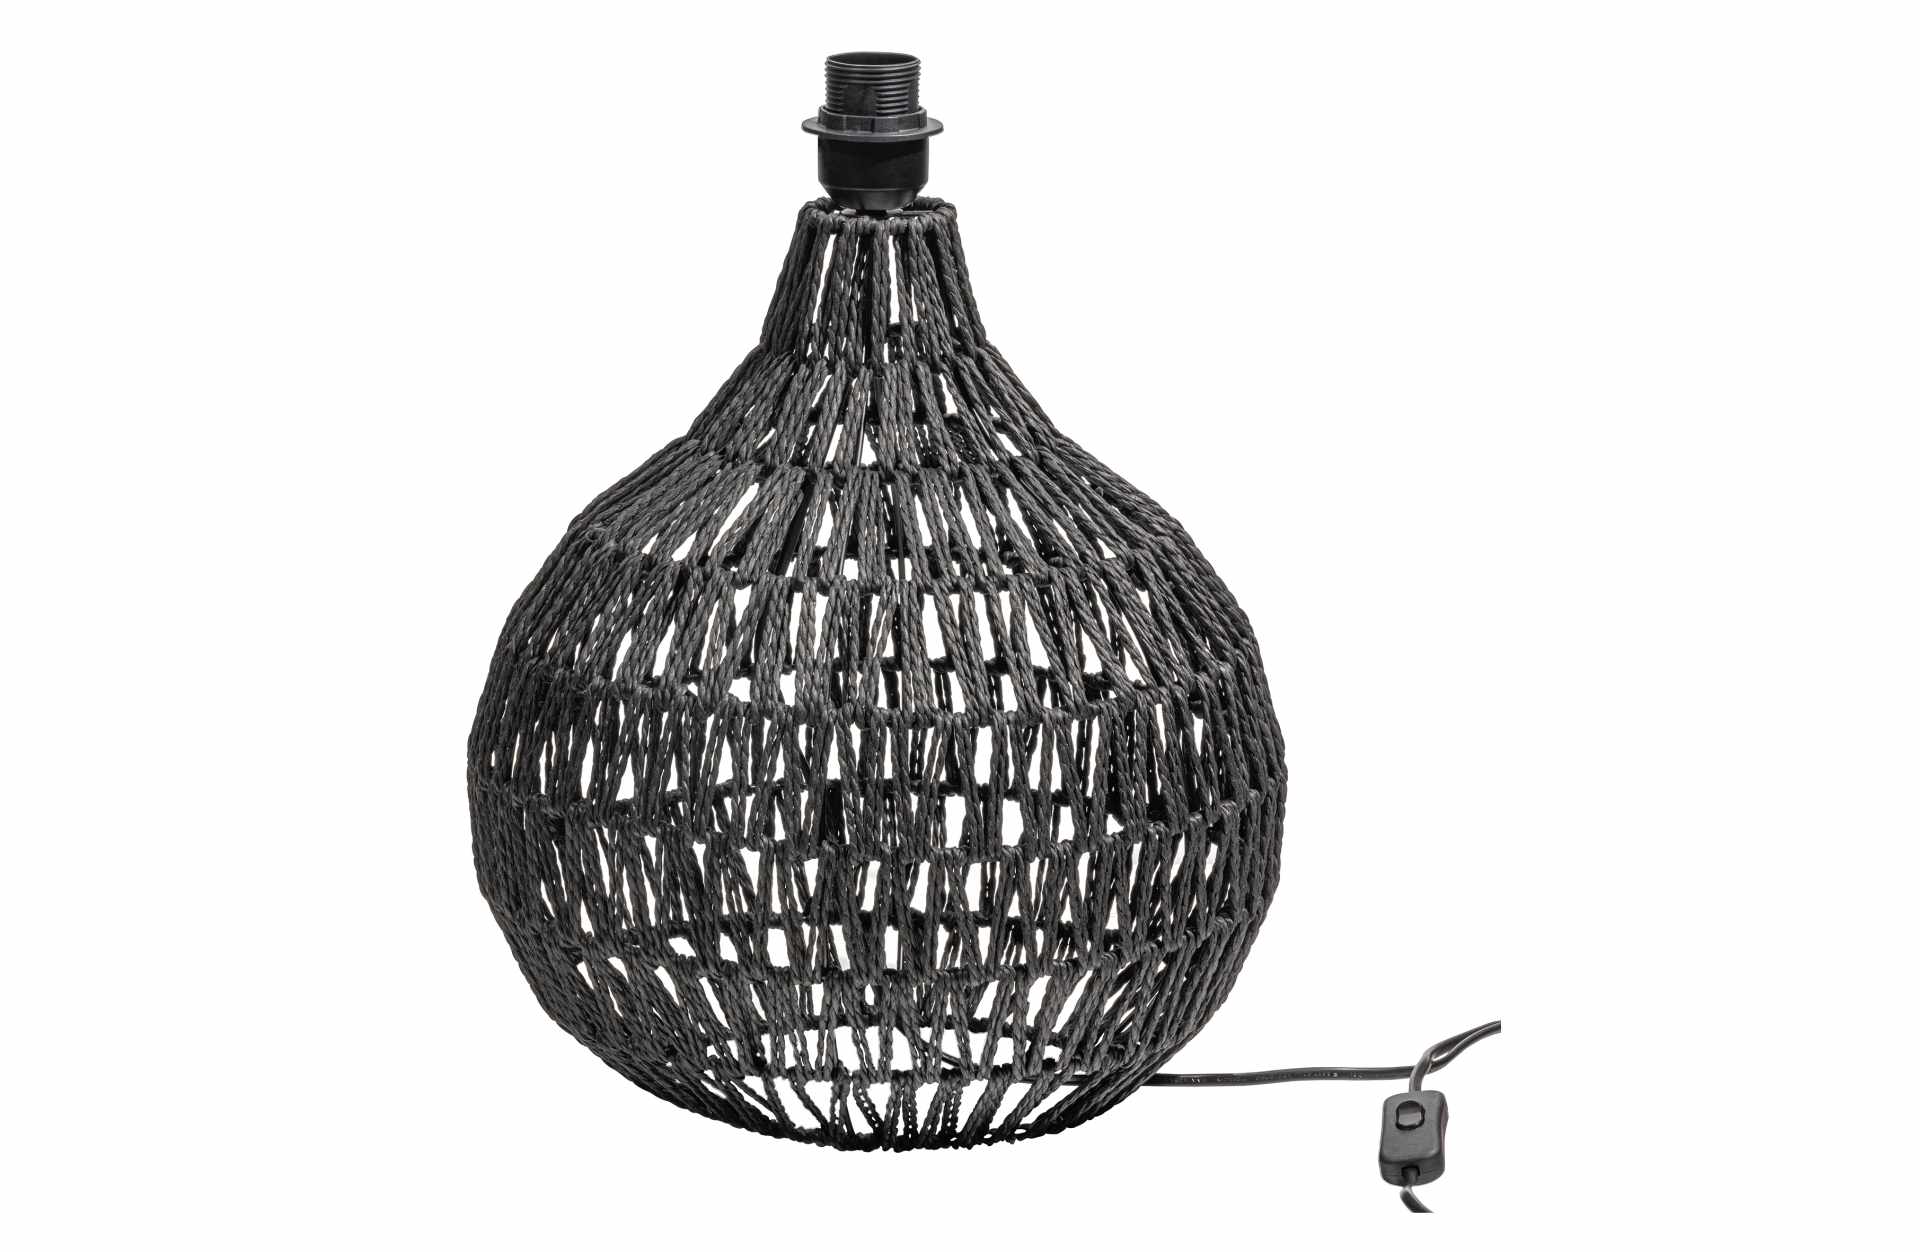 Die Tischlampe Macy hat ein schlichtes aber auch modernes Design. Gefertigt wurde die Lampe aus Rattan Imitat und besitzt eine schwarze Farbe.